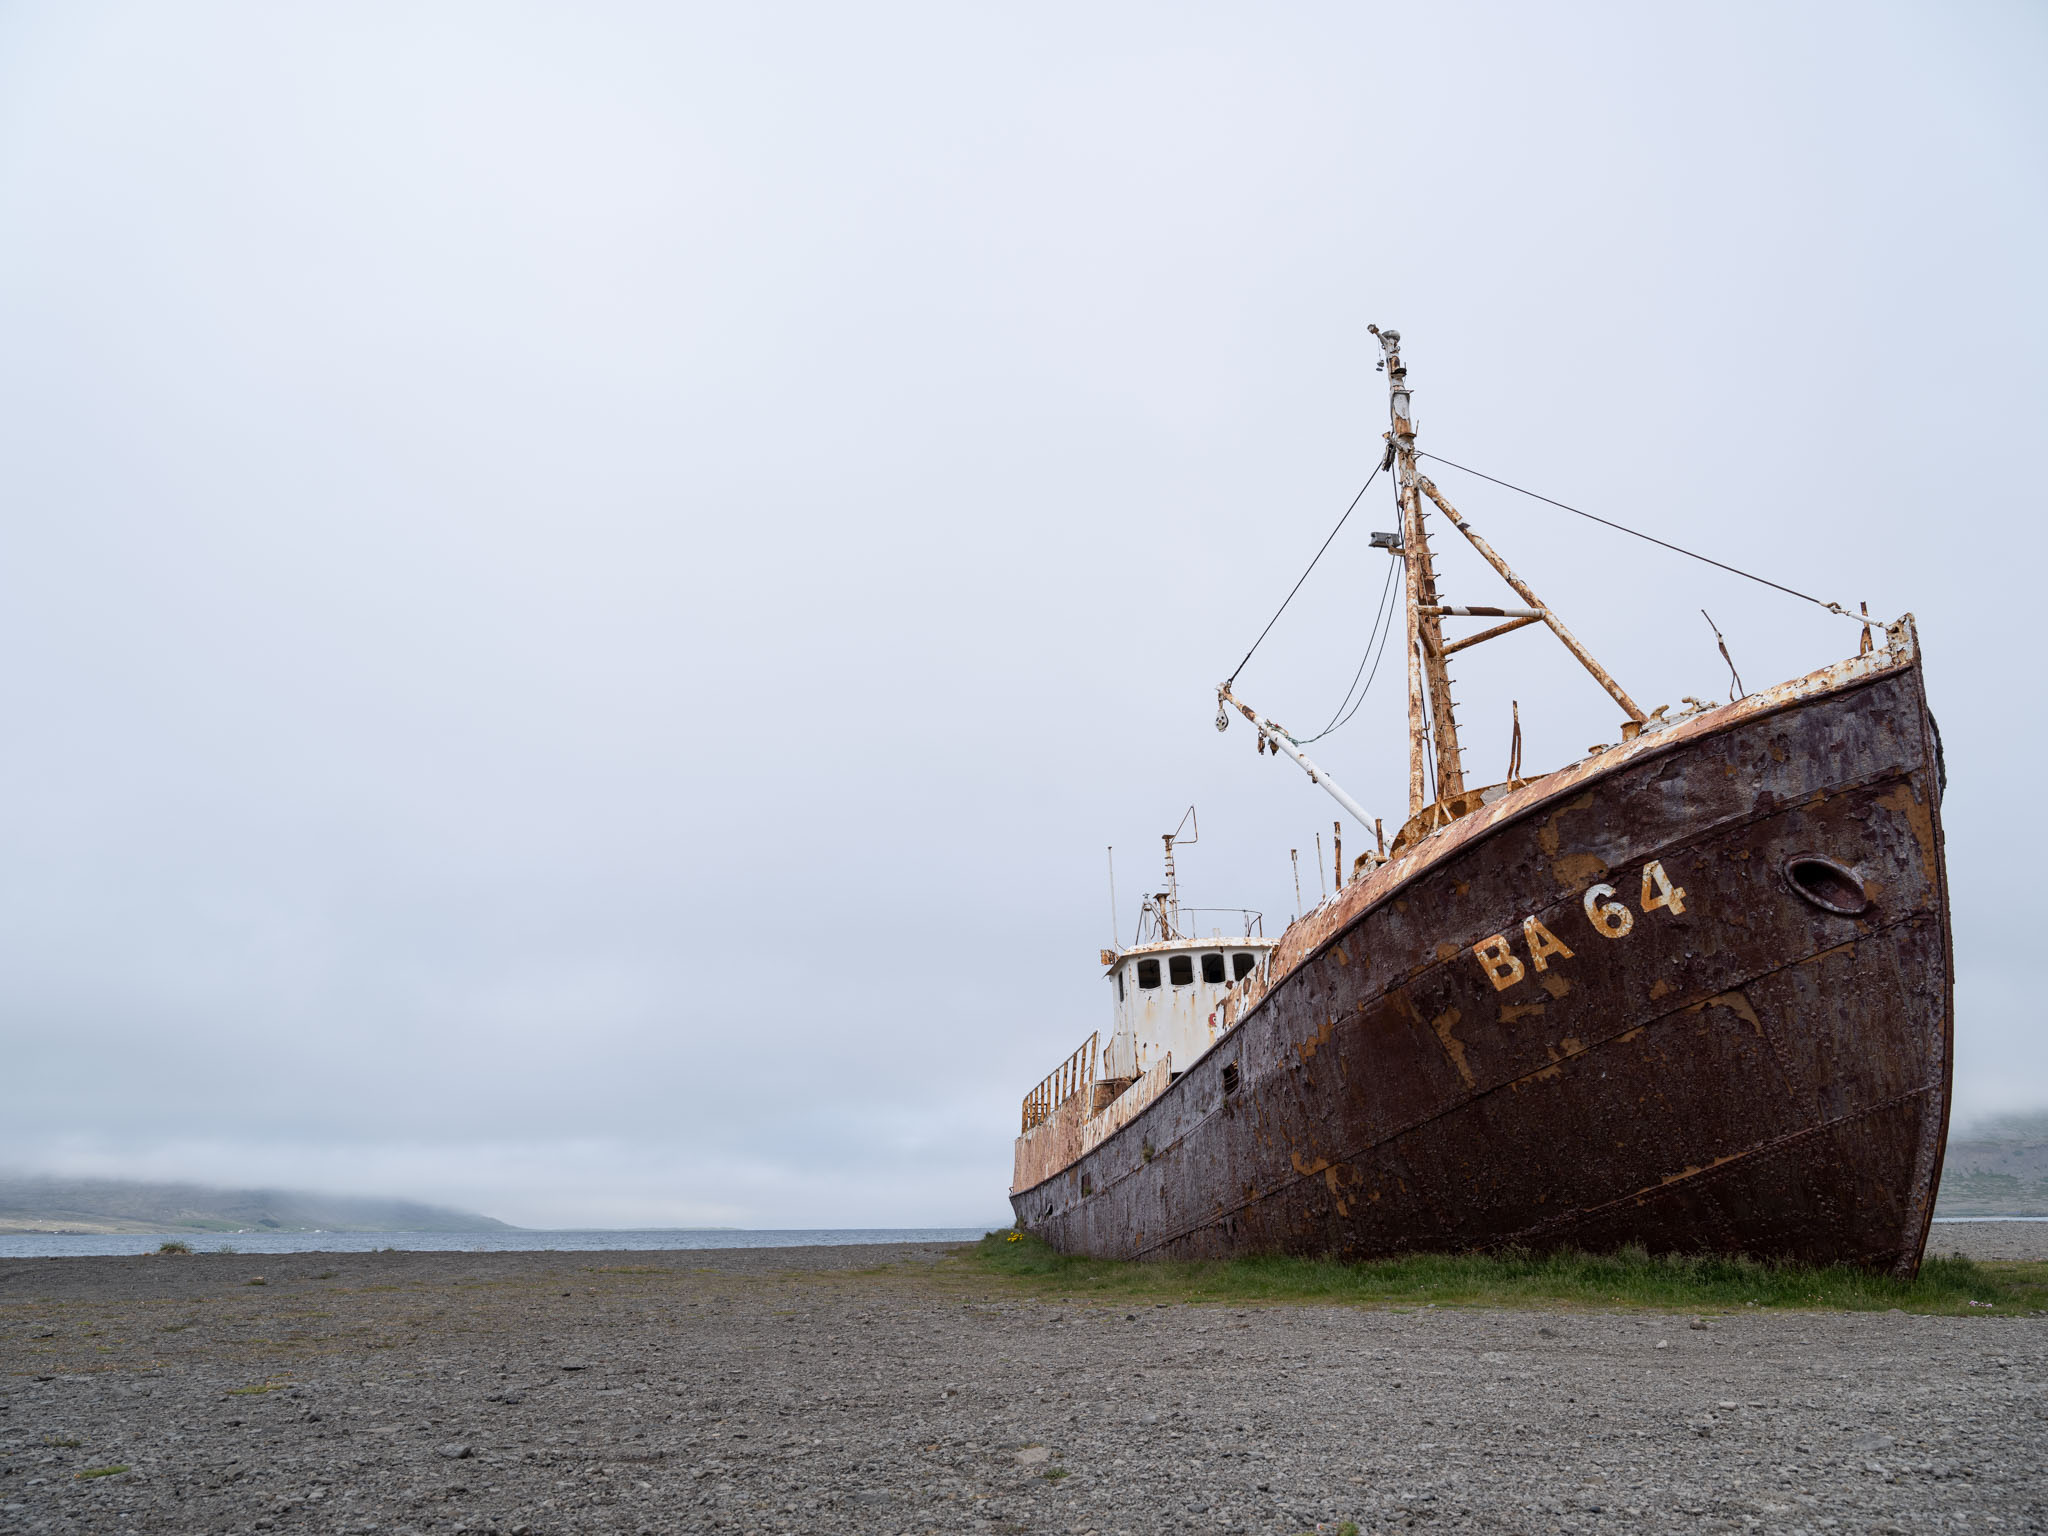 a rusty boat on a beach